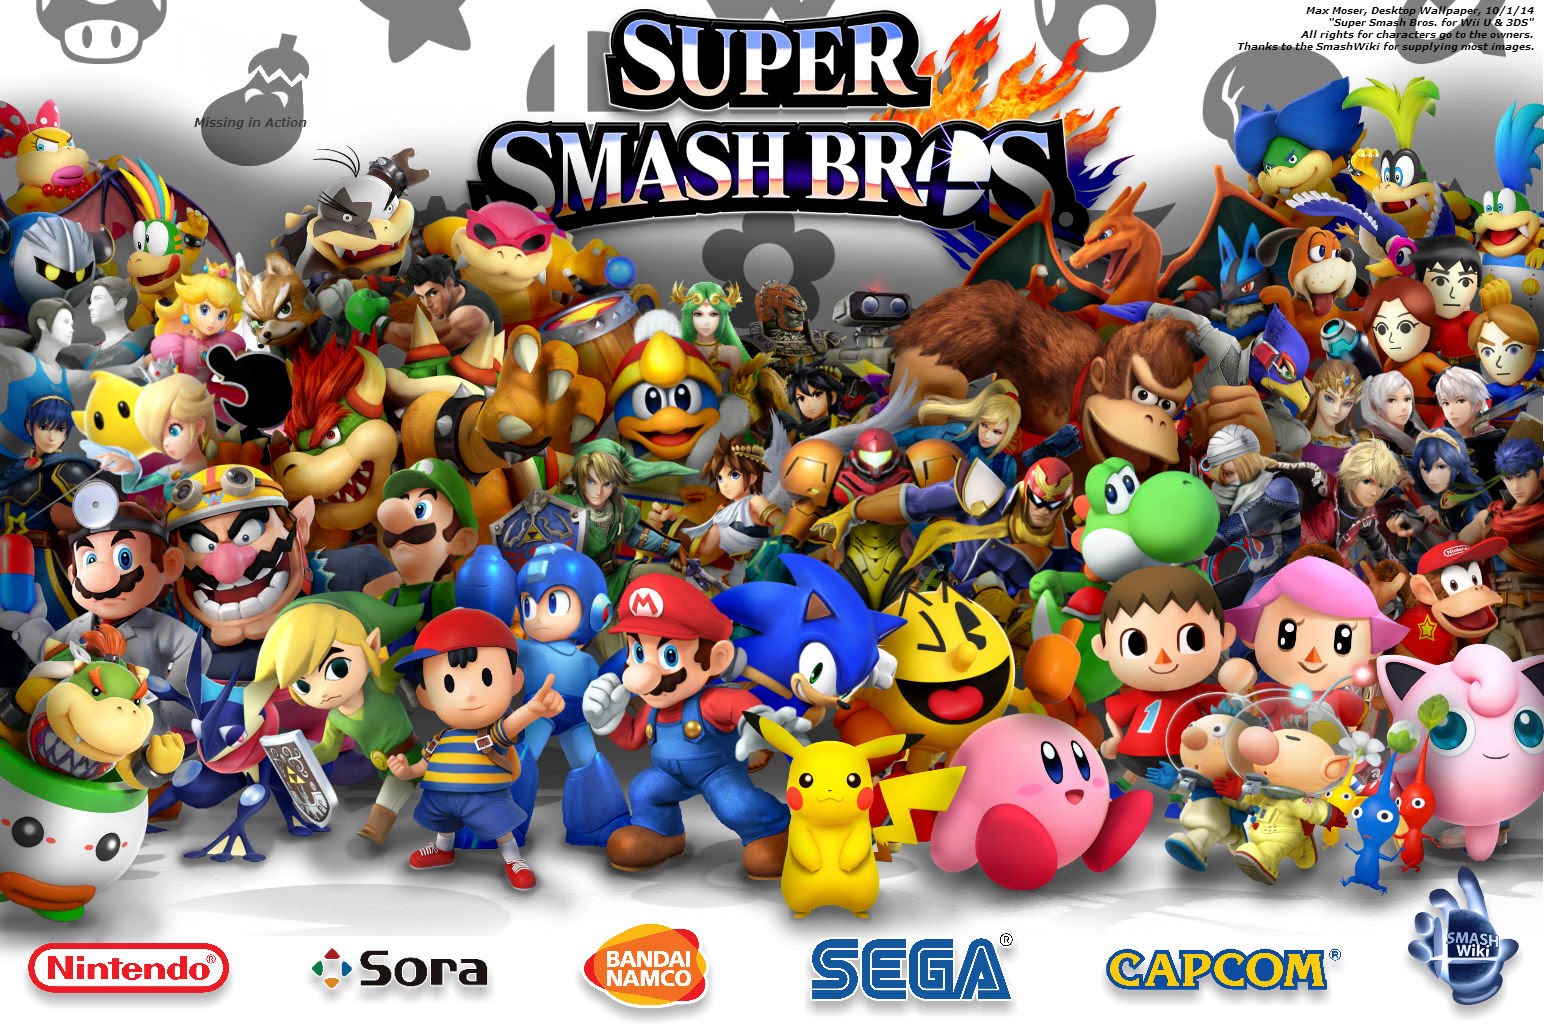 Super Smash Bros. for Wii U & 3DS Desktop Wallpaper - YouTube